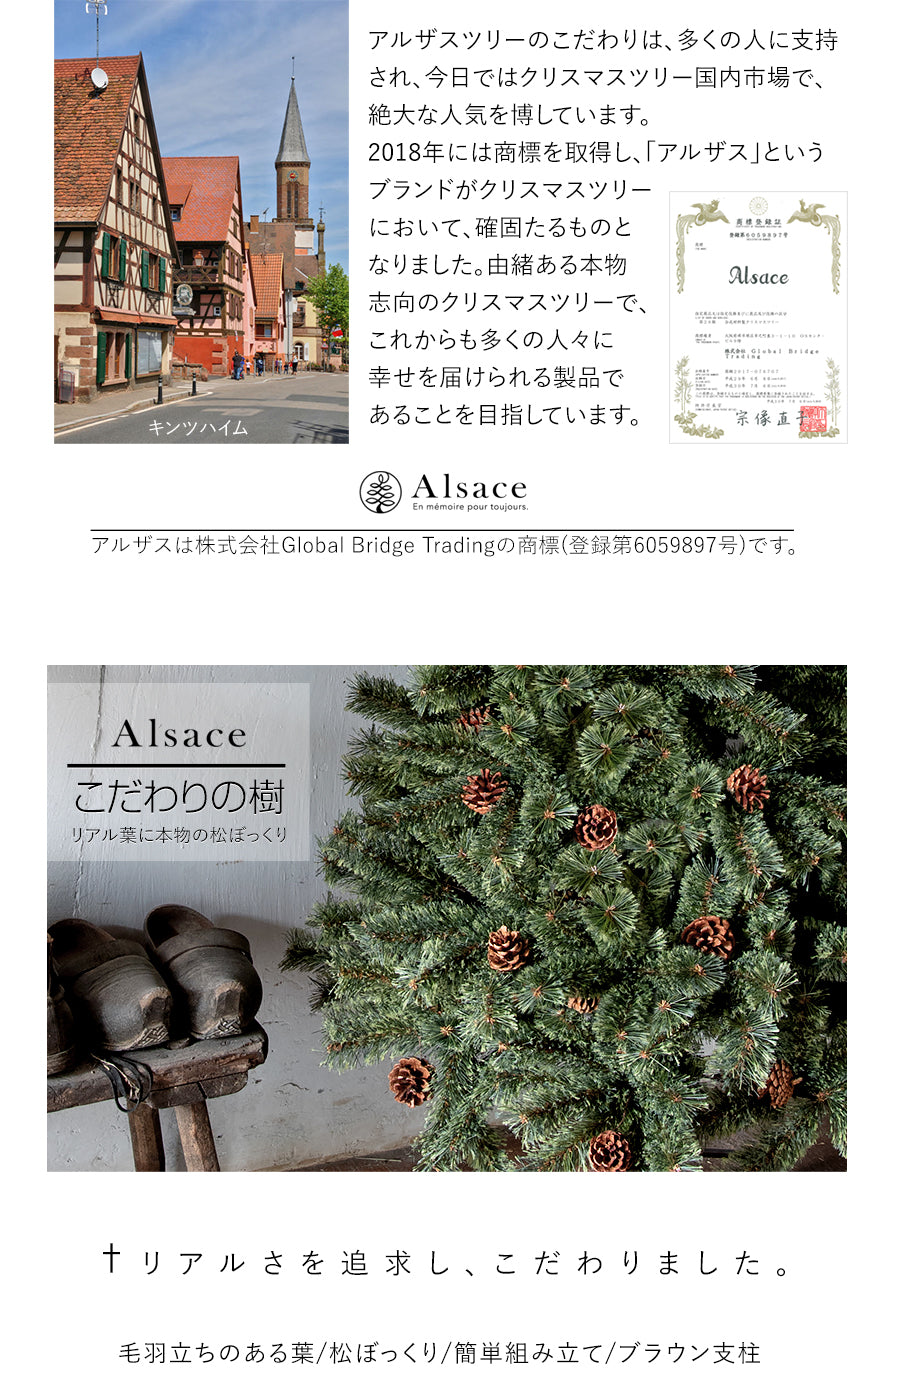 Alsace® アルザスツリー + 62p Luxuryオーナメント 樅